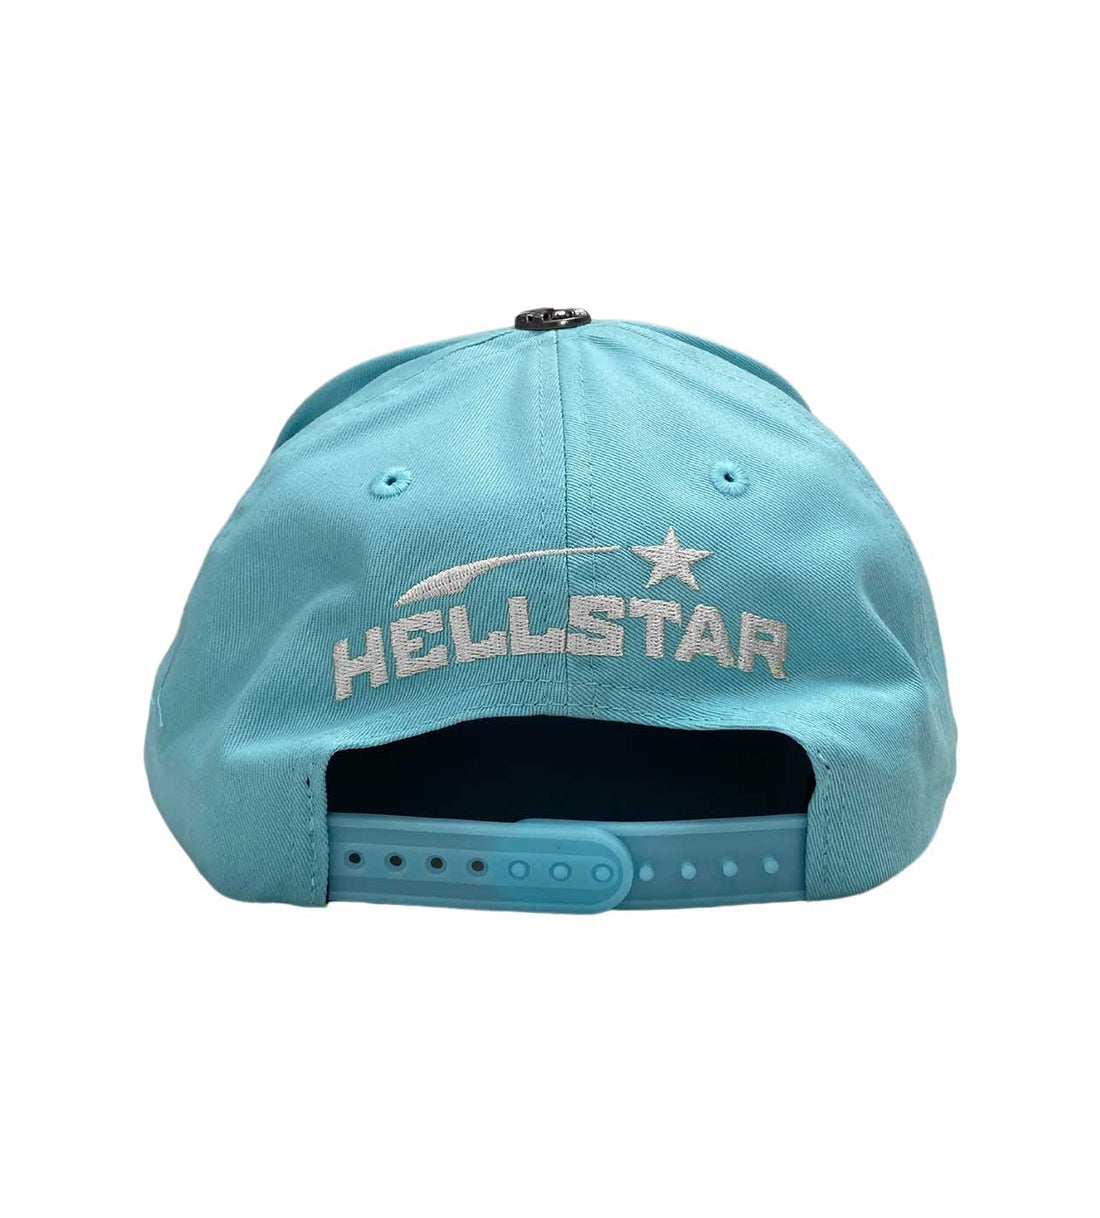 Hellstar Baby Blue Snapback